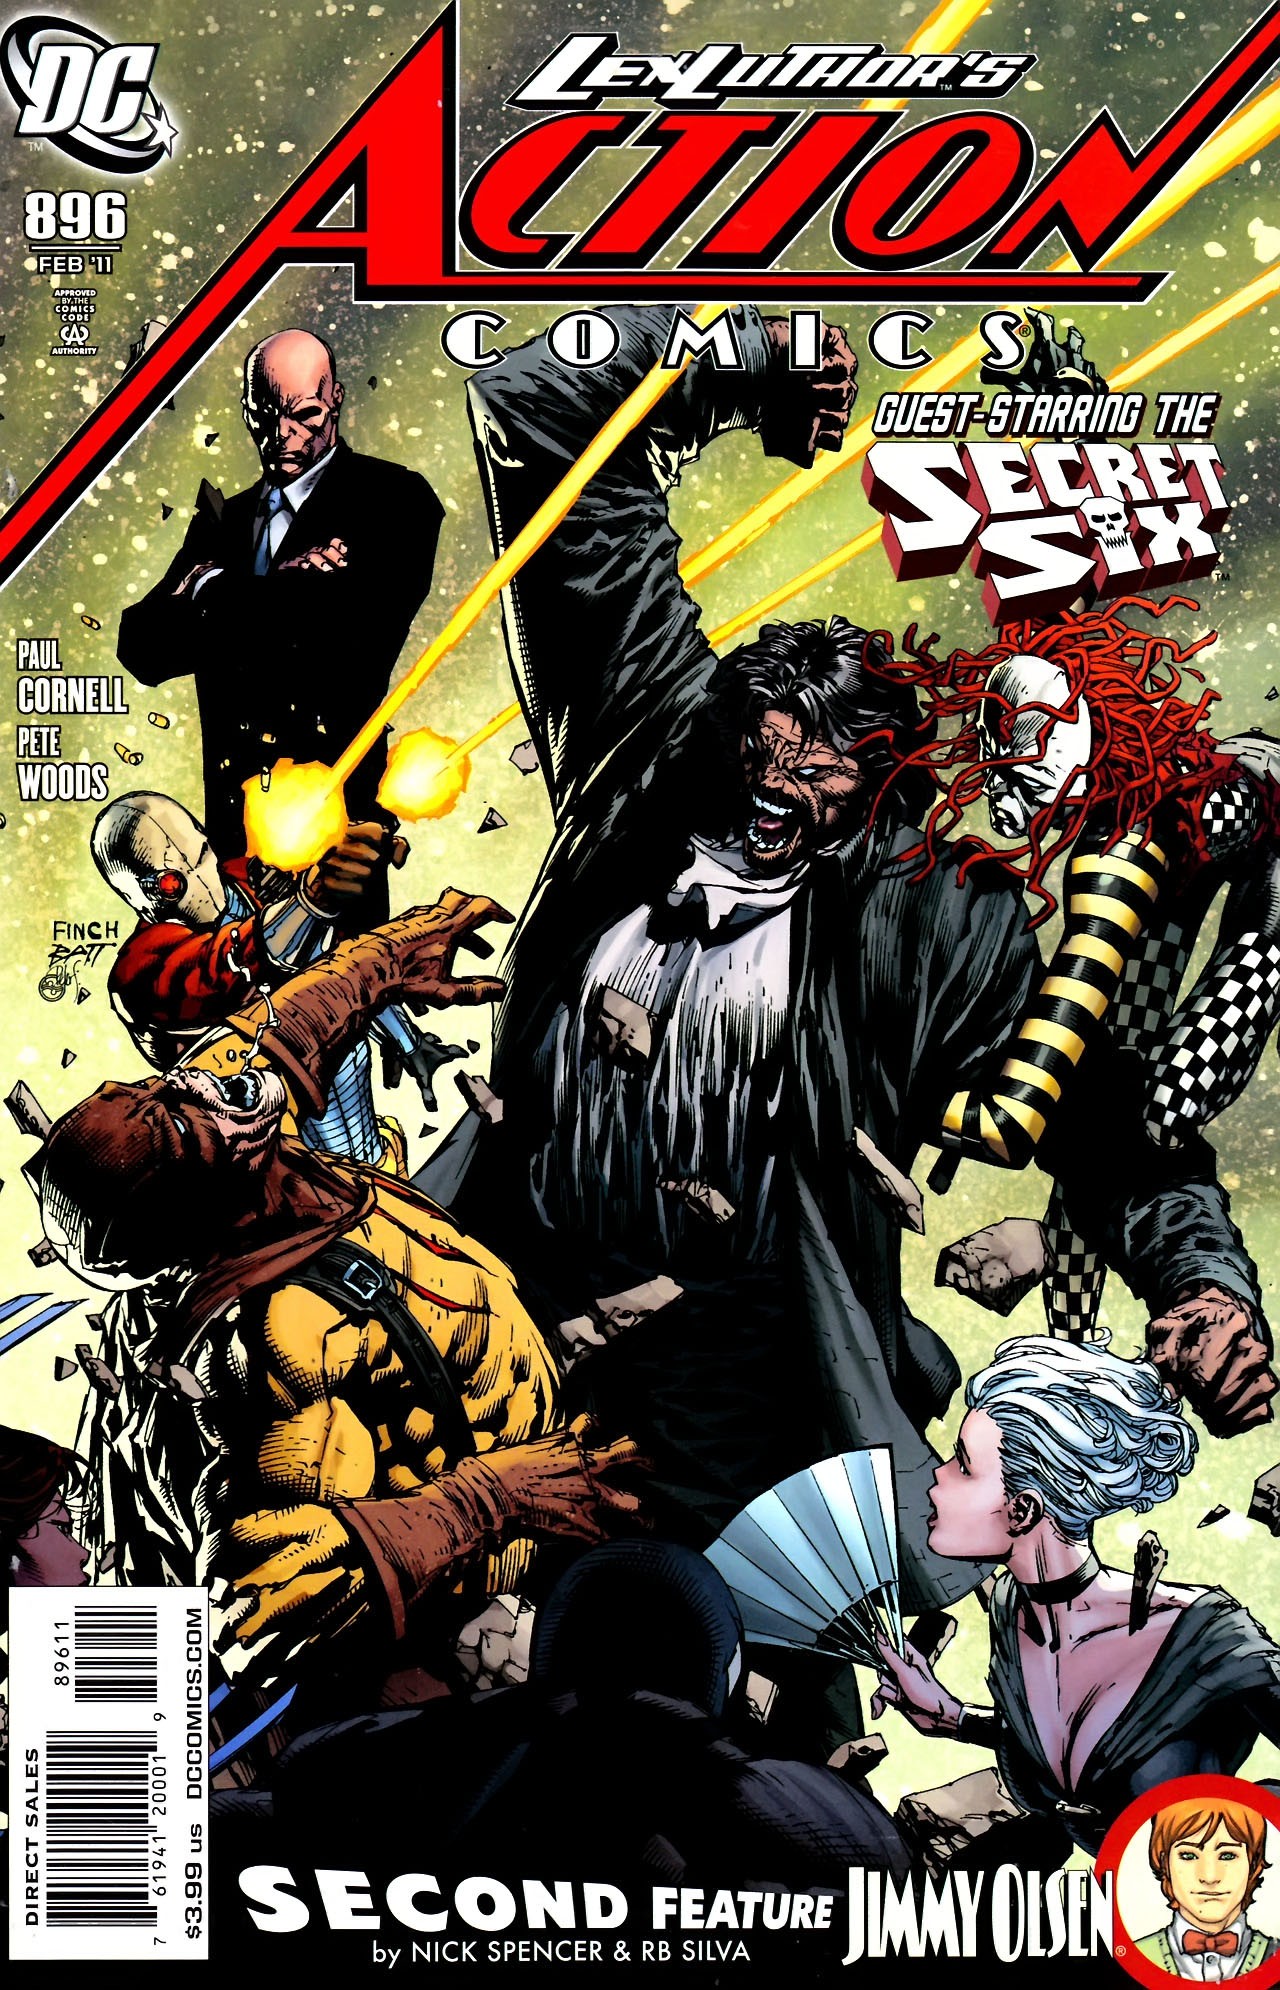 Action Comics Vol. 1 #896